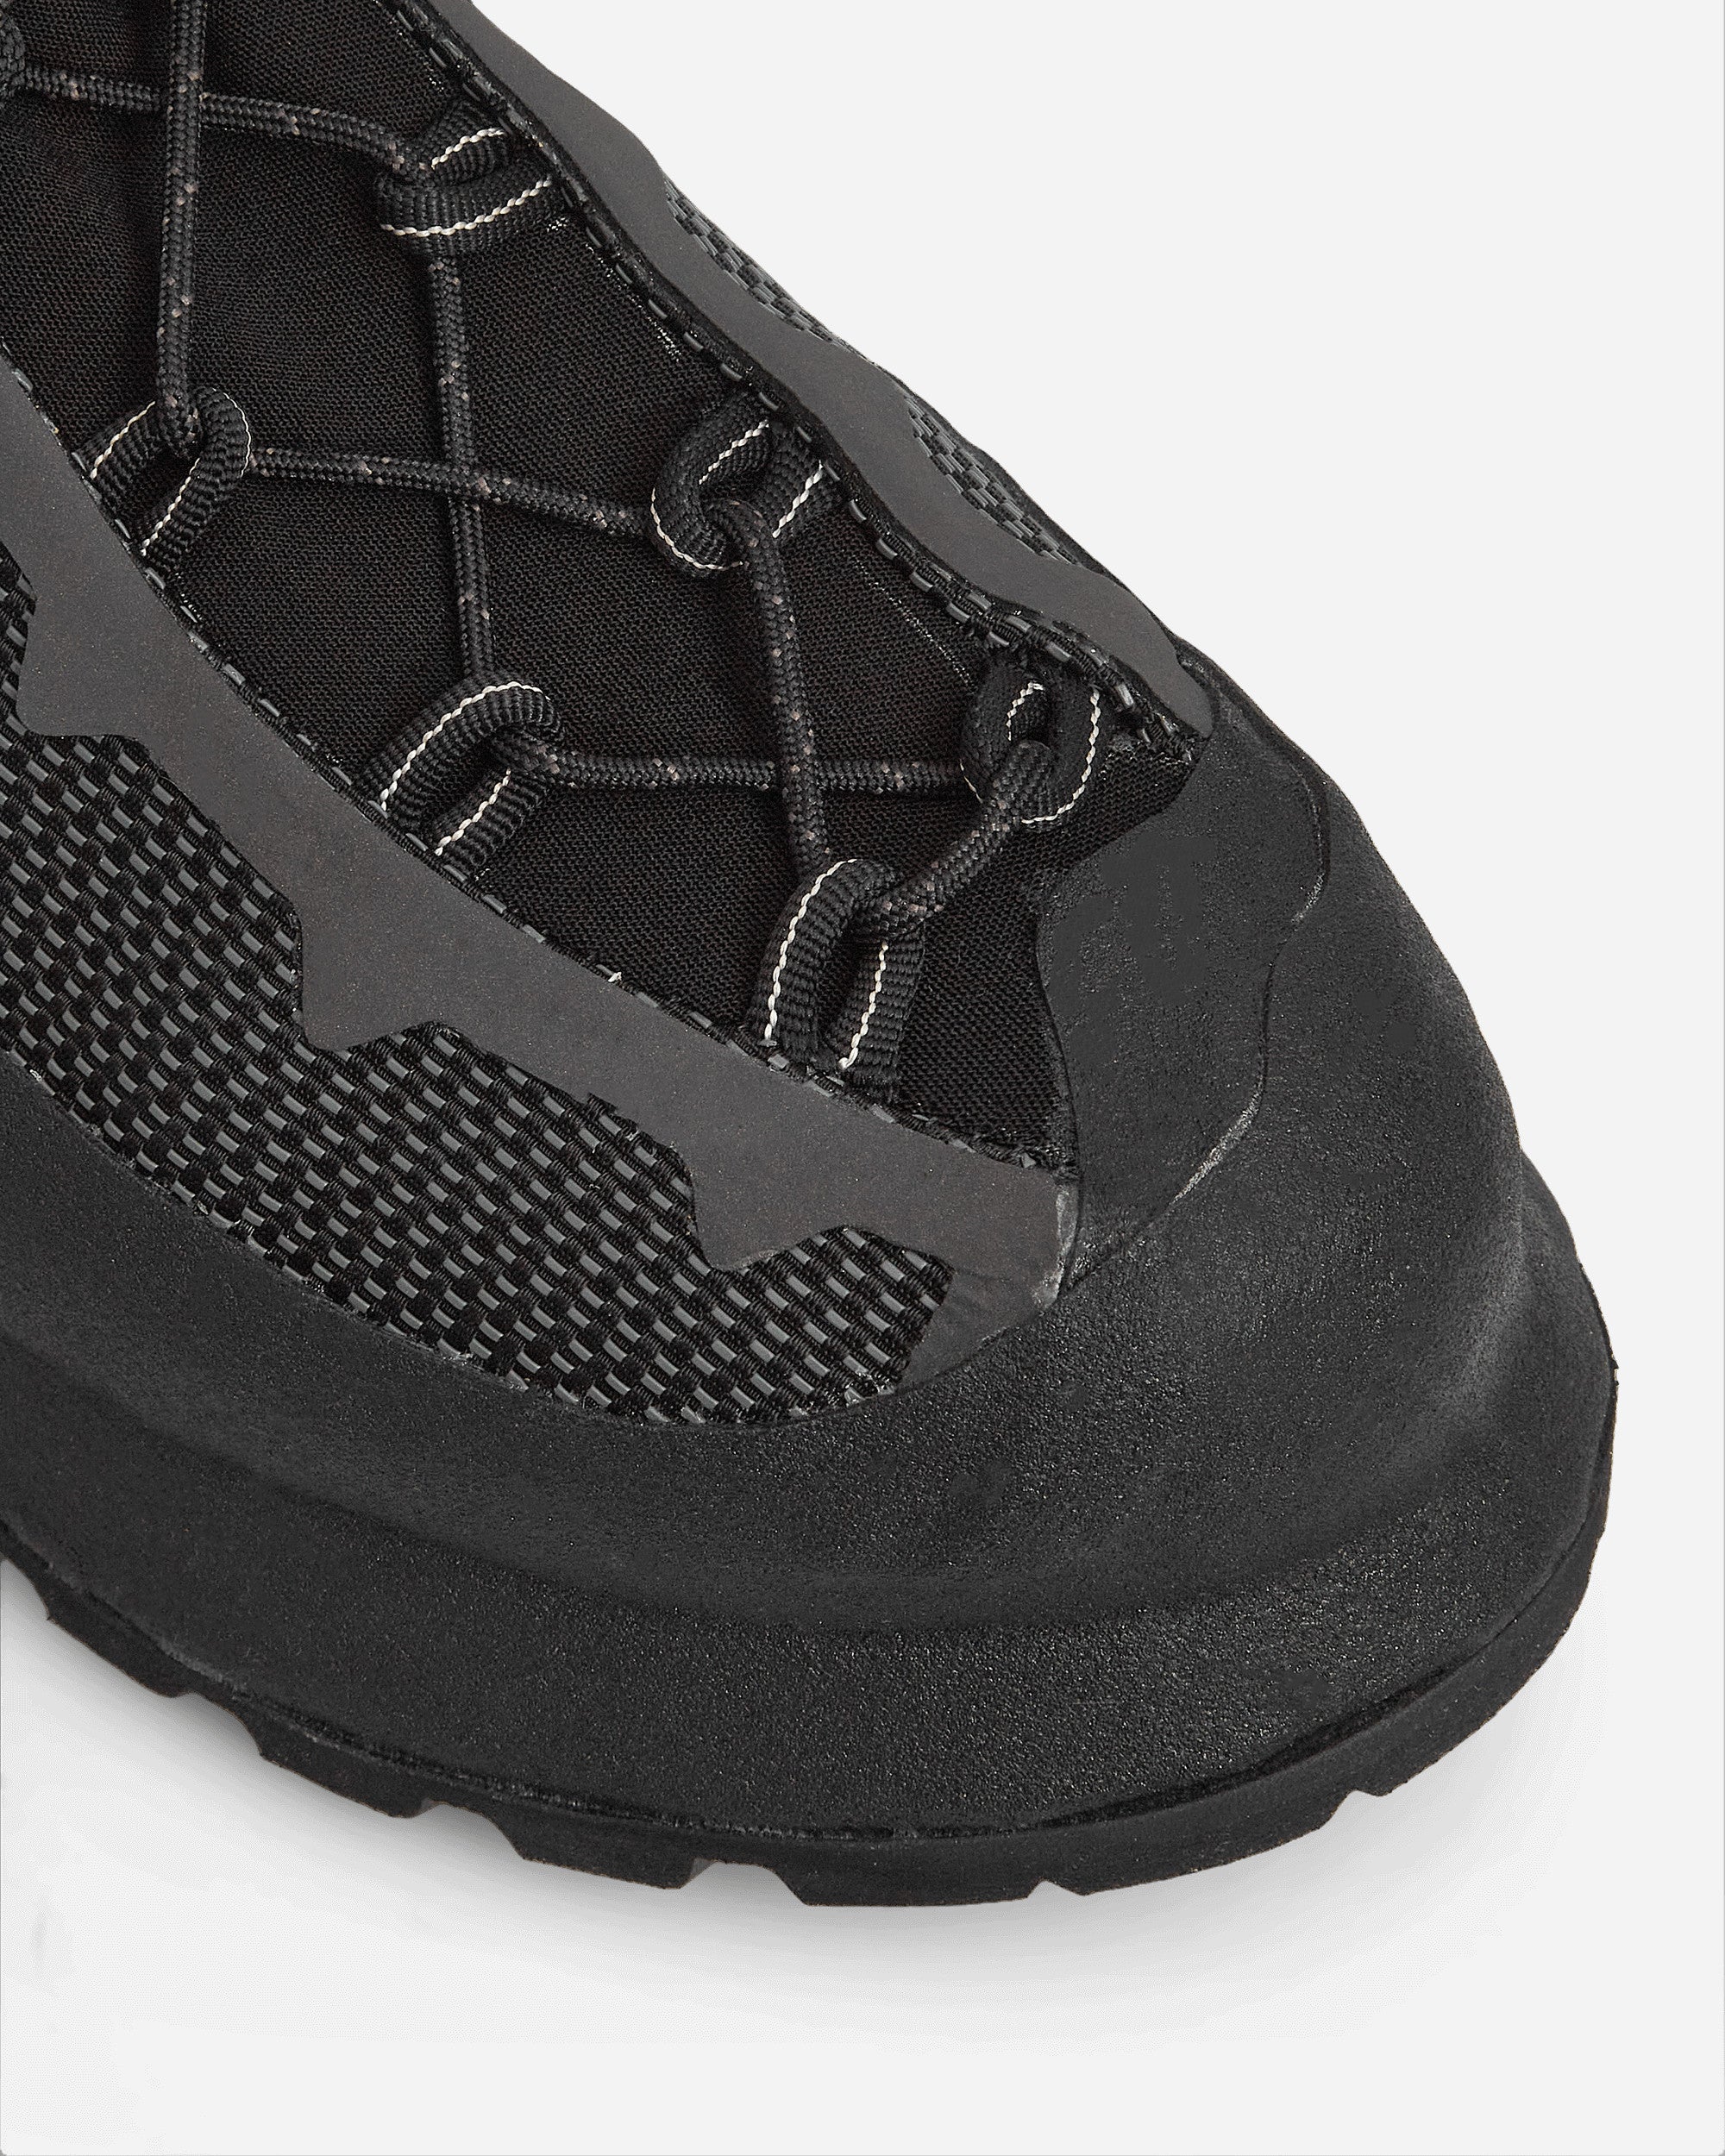 Demon Carbonaz Black Boots Mid CARBONAZBLACK BLACK